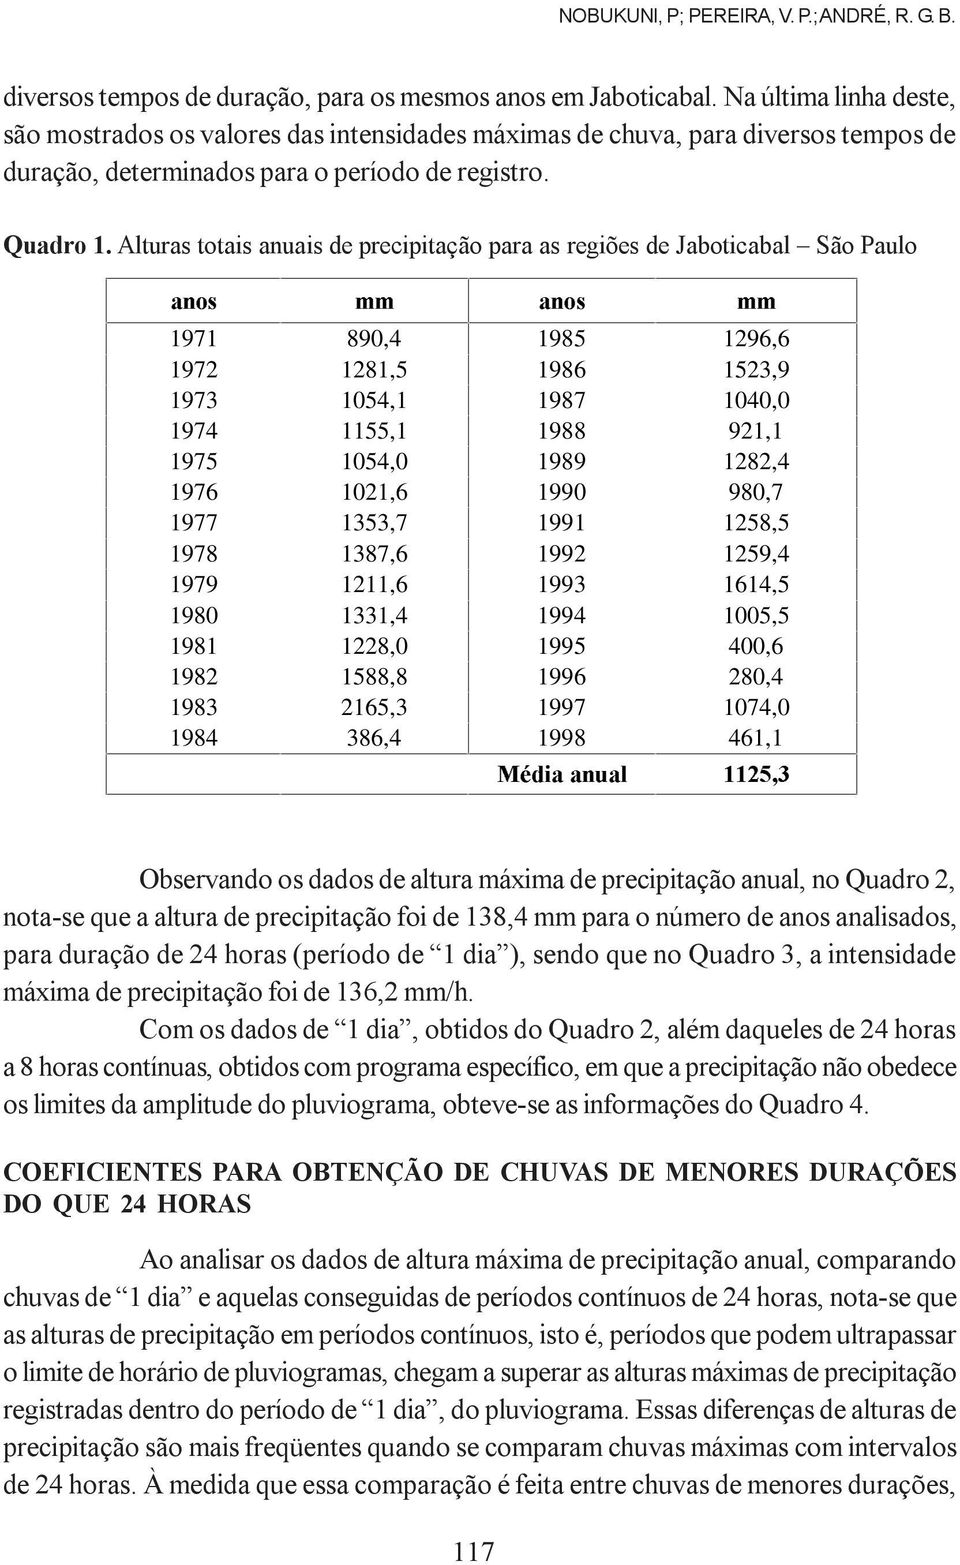 Alturas totais anuais de precipitação para as regiões de Jaboticabal São Paulo DQRVÃ PPÃ DQRVÃ PPÃ 1971 890,4 1985 1296,6 1972 1281,5 1986 1523,9 1973 1054,1 1987 1040,0 1974 1155,1 1988 921,1 1975